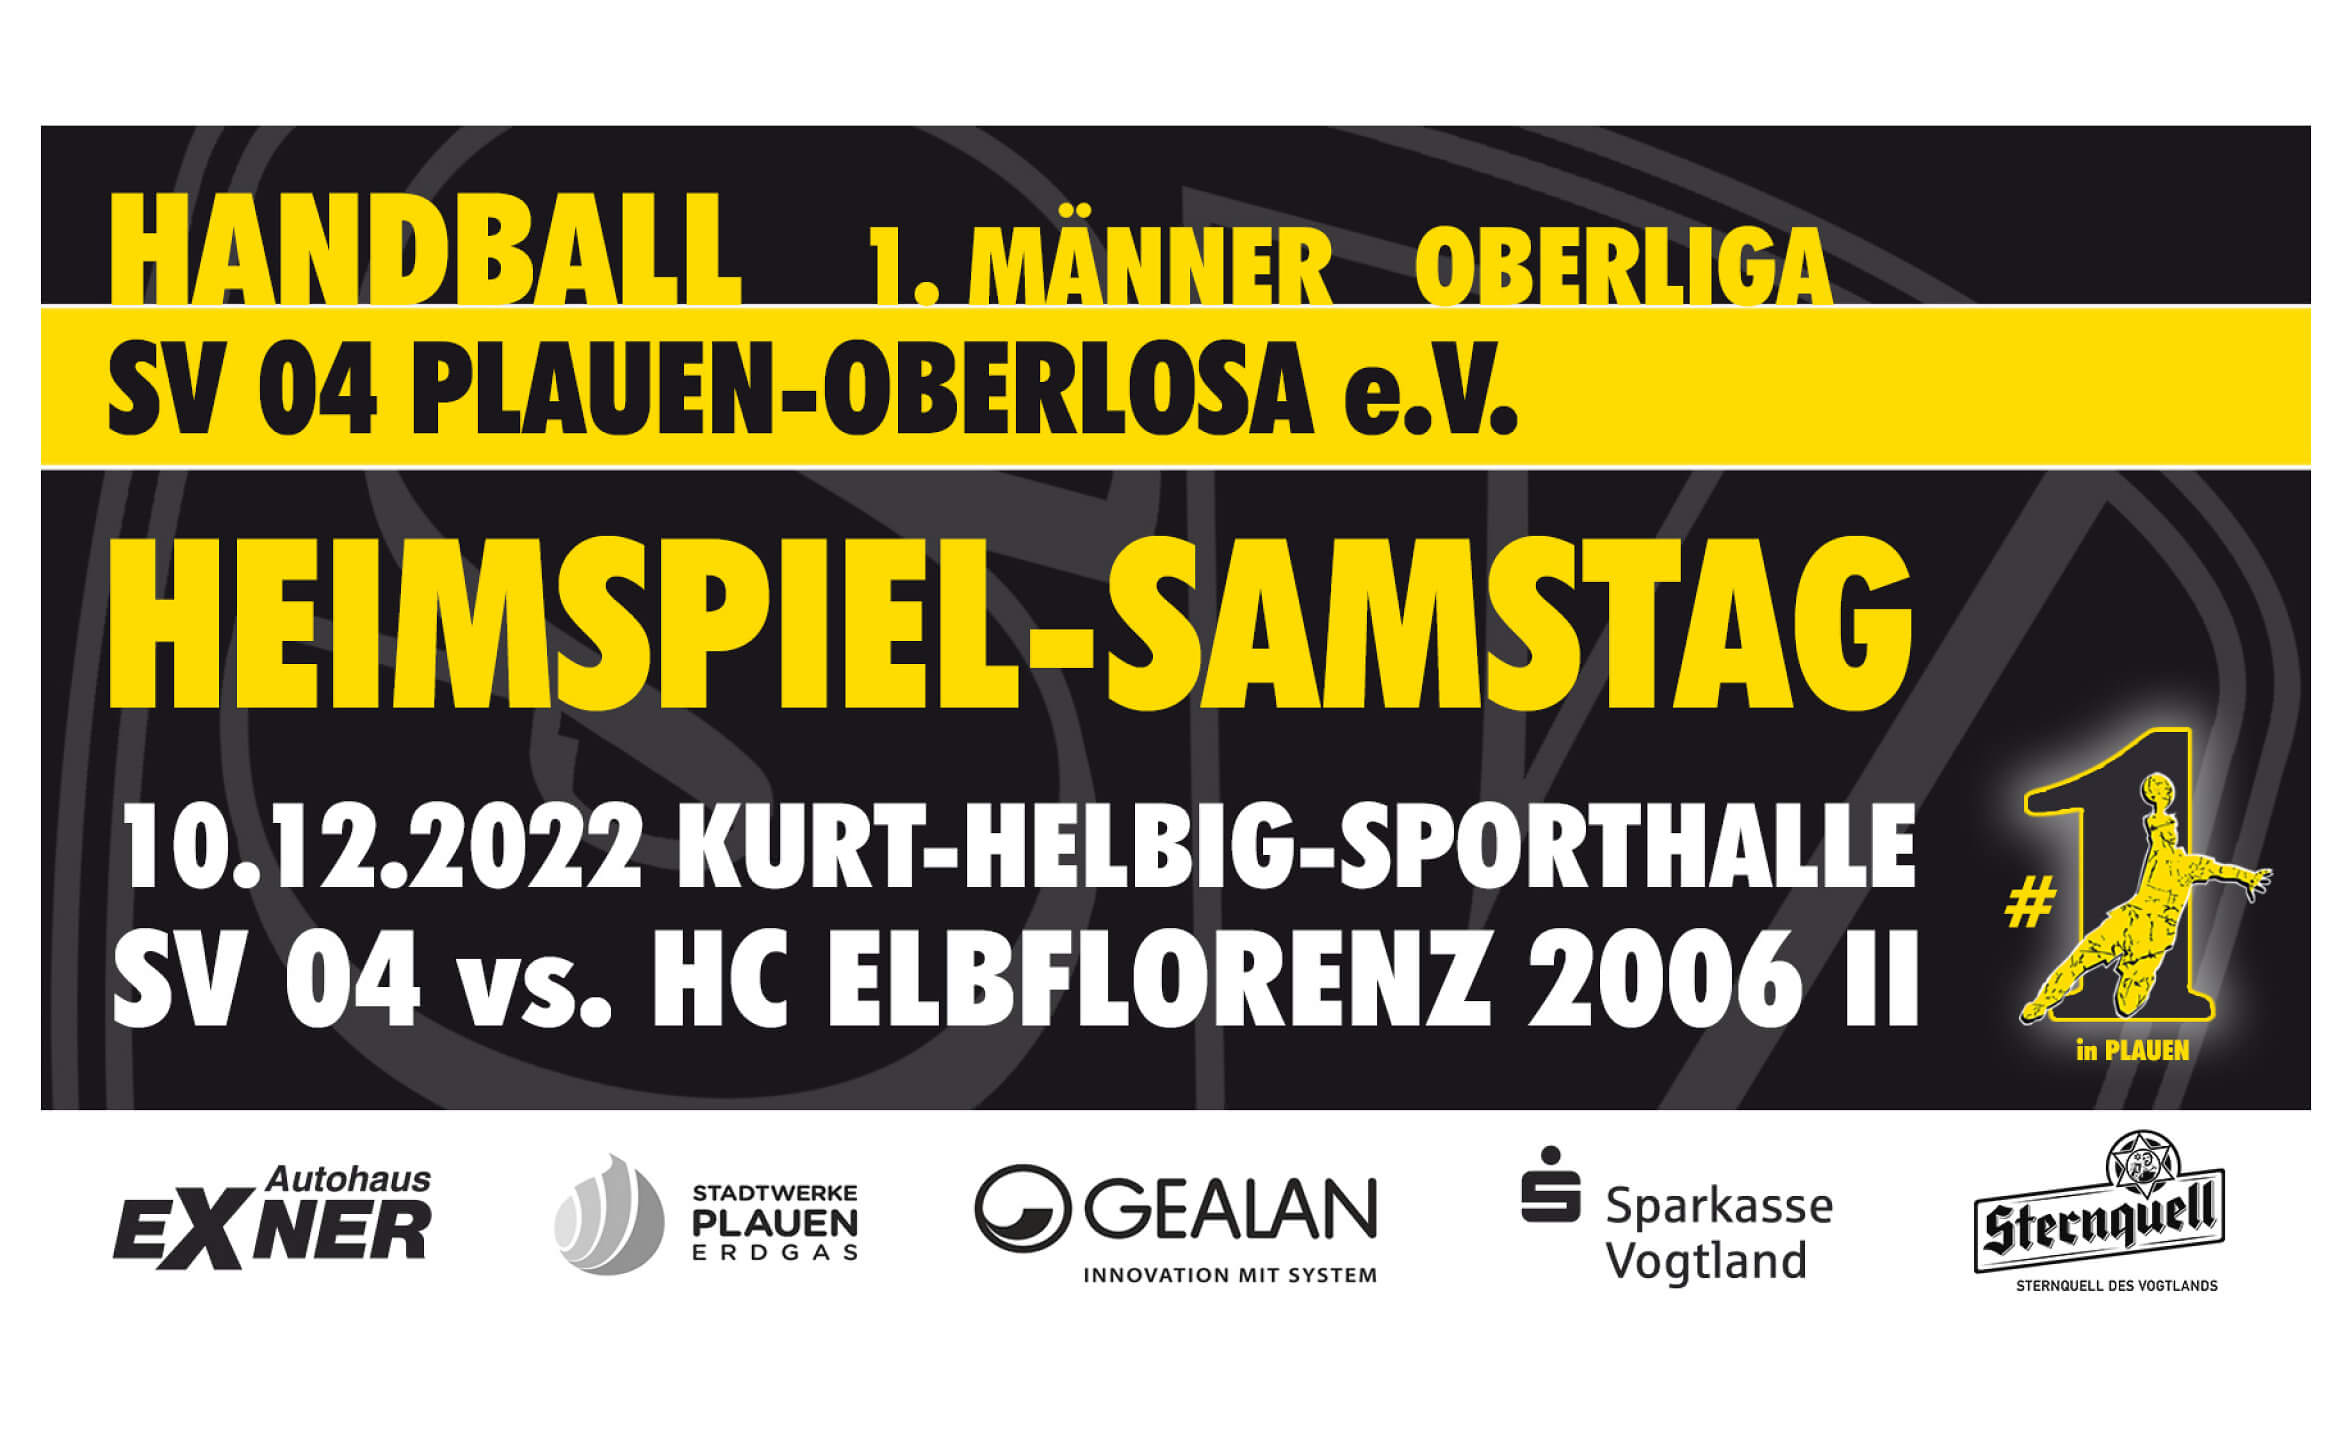 Event-Image for 'Heimspiel SV 04 Plauen-Oberlosa vs. HC Elbflorenz 2006 II'